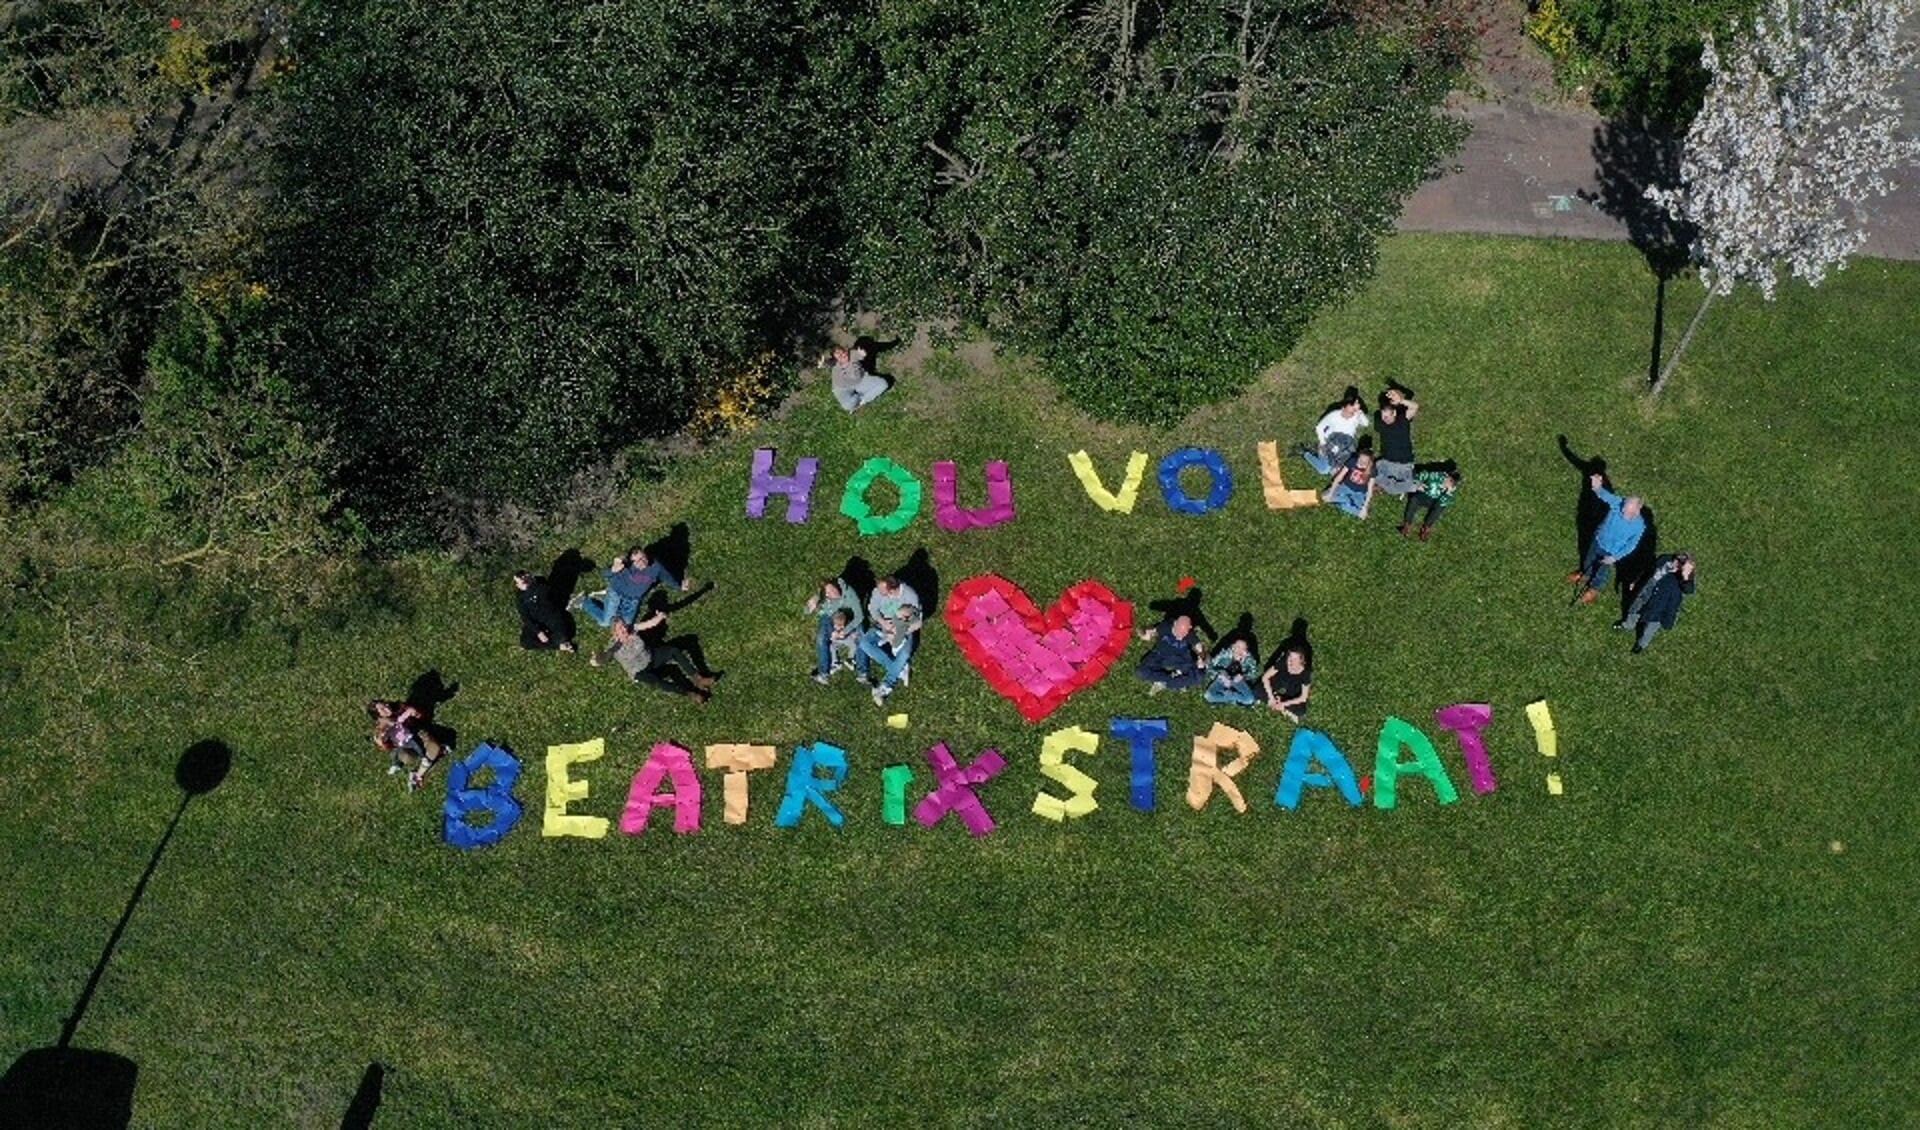 Bewoners van de Beatrixstraat steken hun dorpsgenoten een hart onder de riem met een kunstig van kleurig papier gemaakte boodschap.